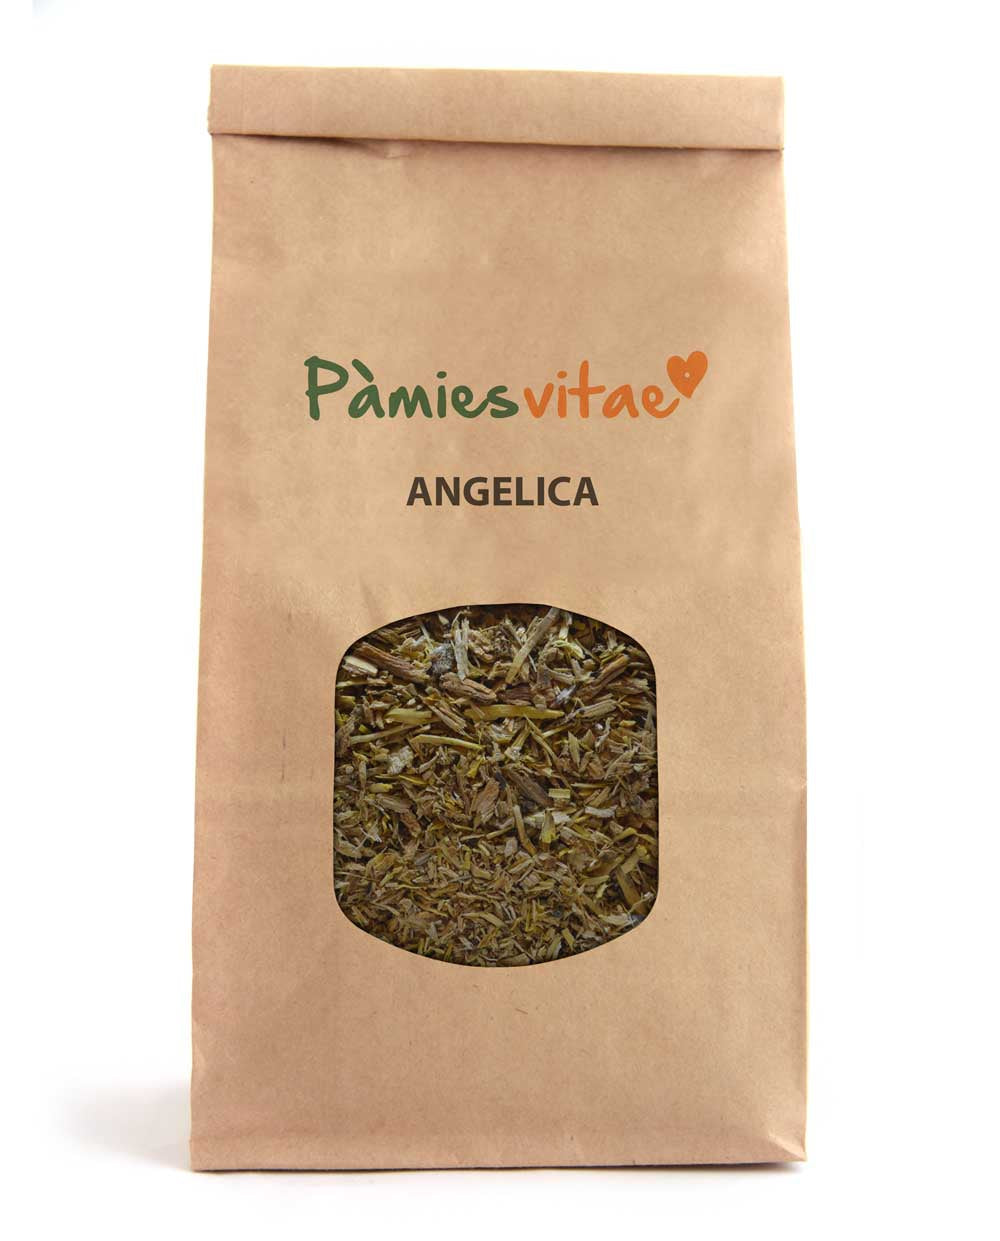 ANGELICA - ARREL - Angelica archangelica